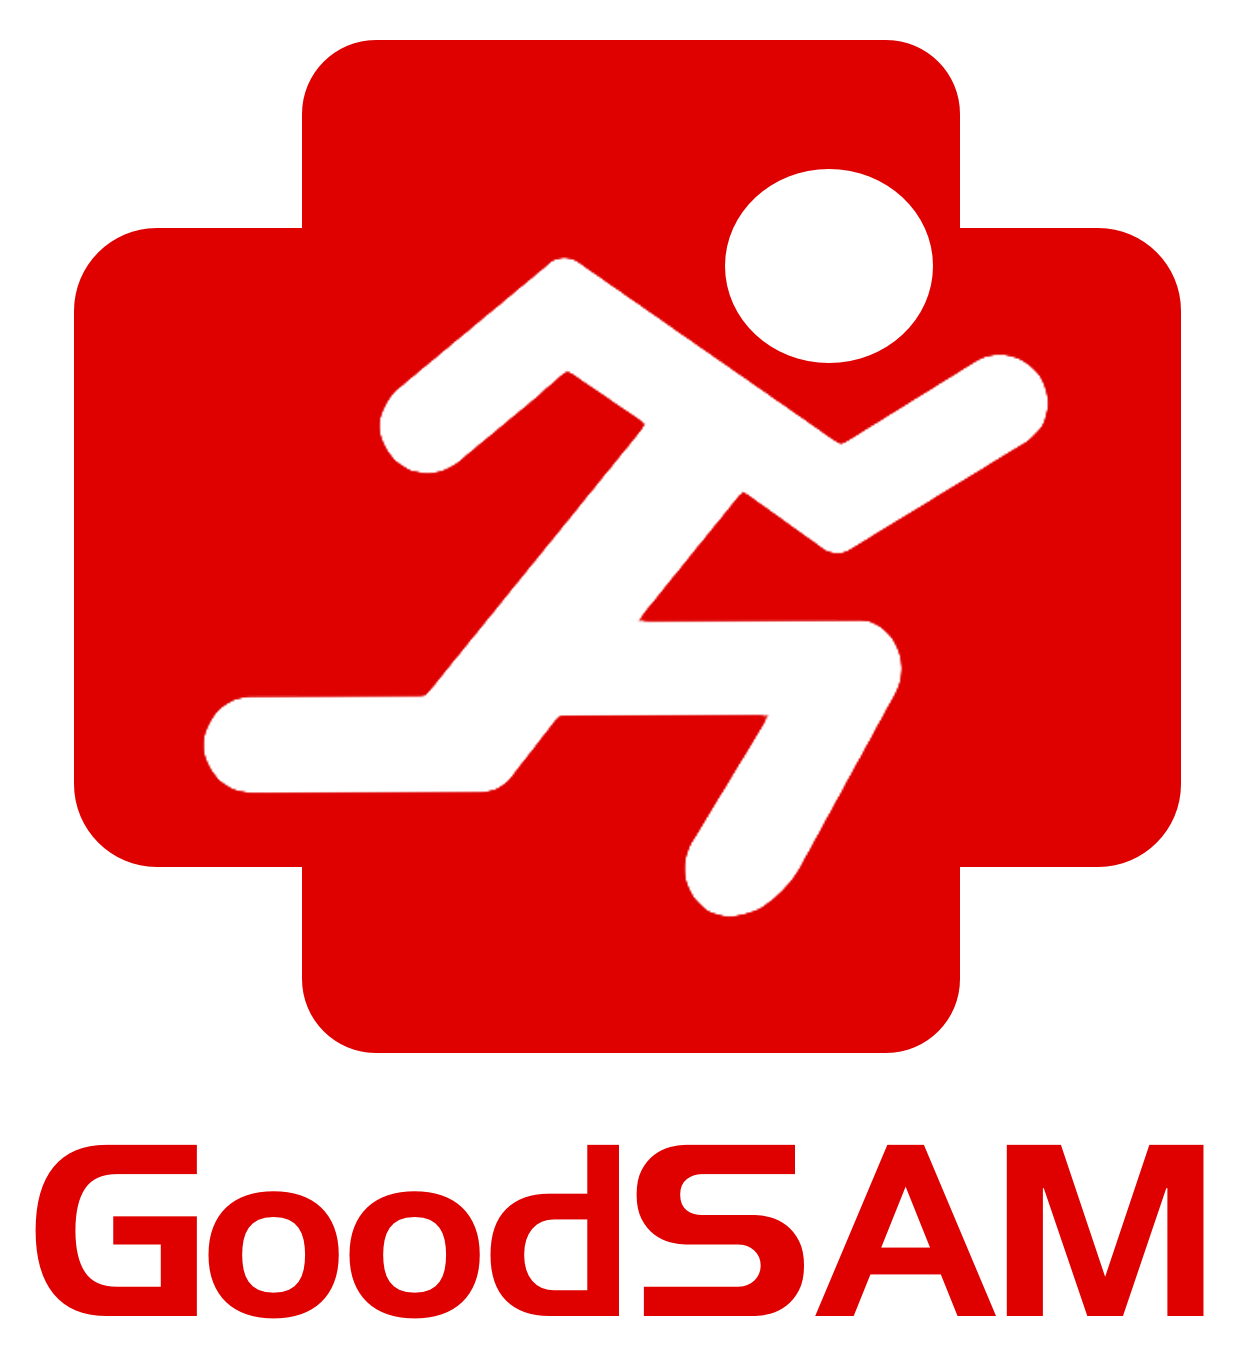 Red Goodsam App logo